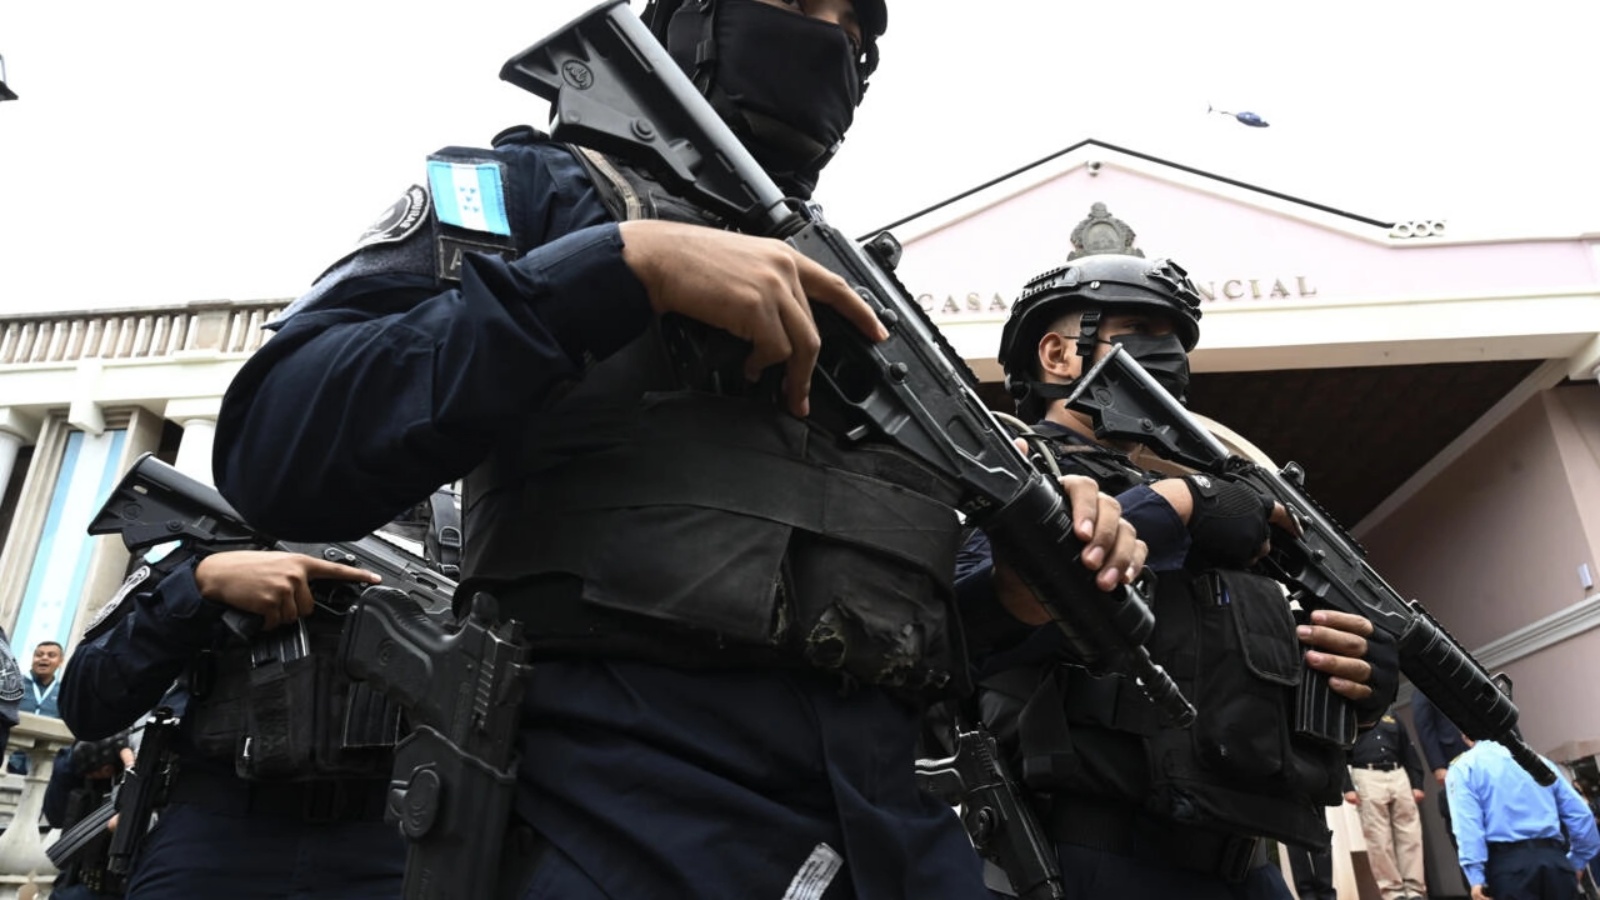 القوات الخاصة في هندوراس عند إطلاق خطة لمحاربة الابتزاز والجريمة المنظمة في البلاد التي أعلنت حالة الطوارئ